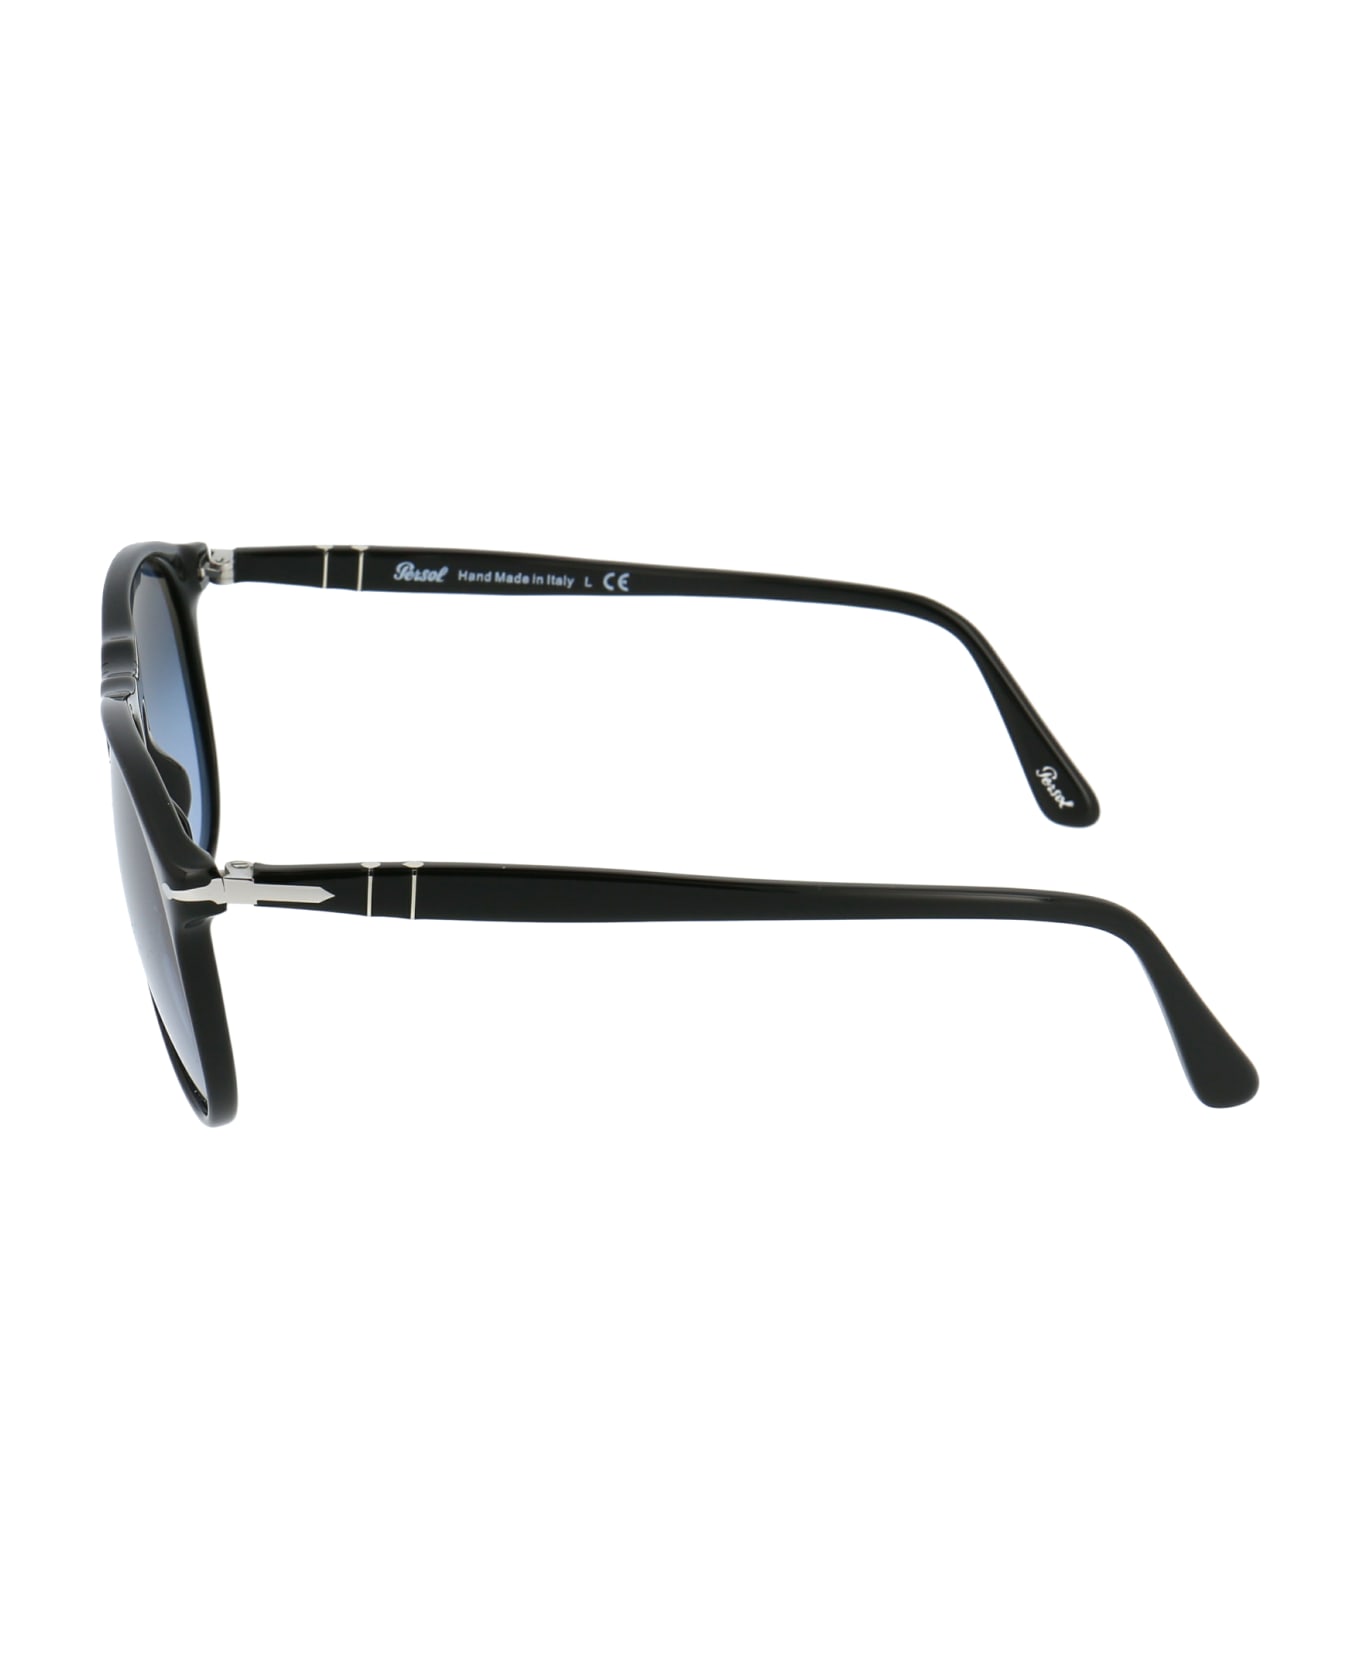 Persol 0po9649s Sunglasses - 95/Q8 BLACK